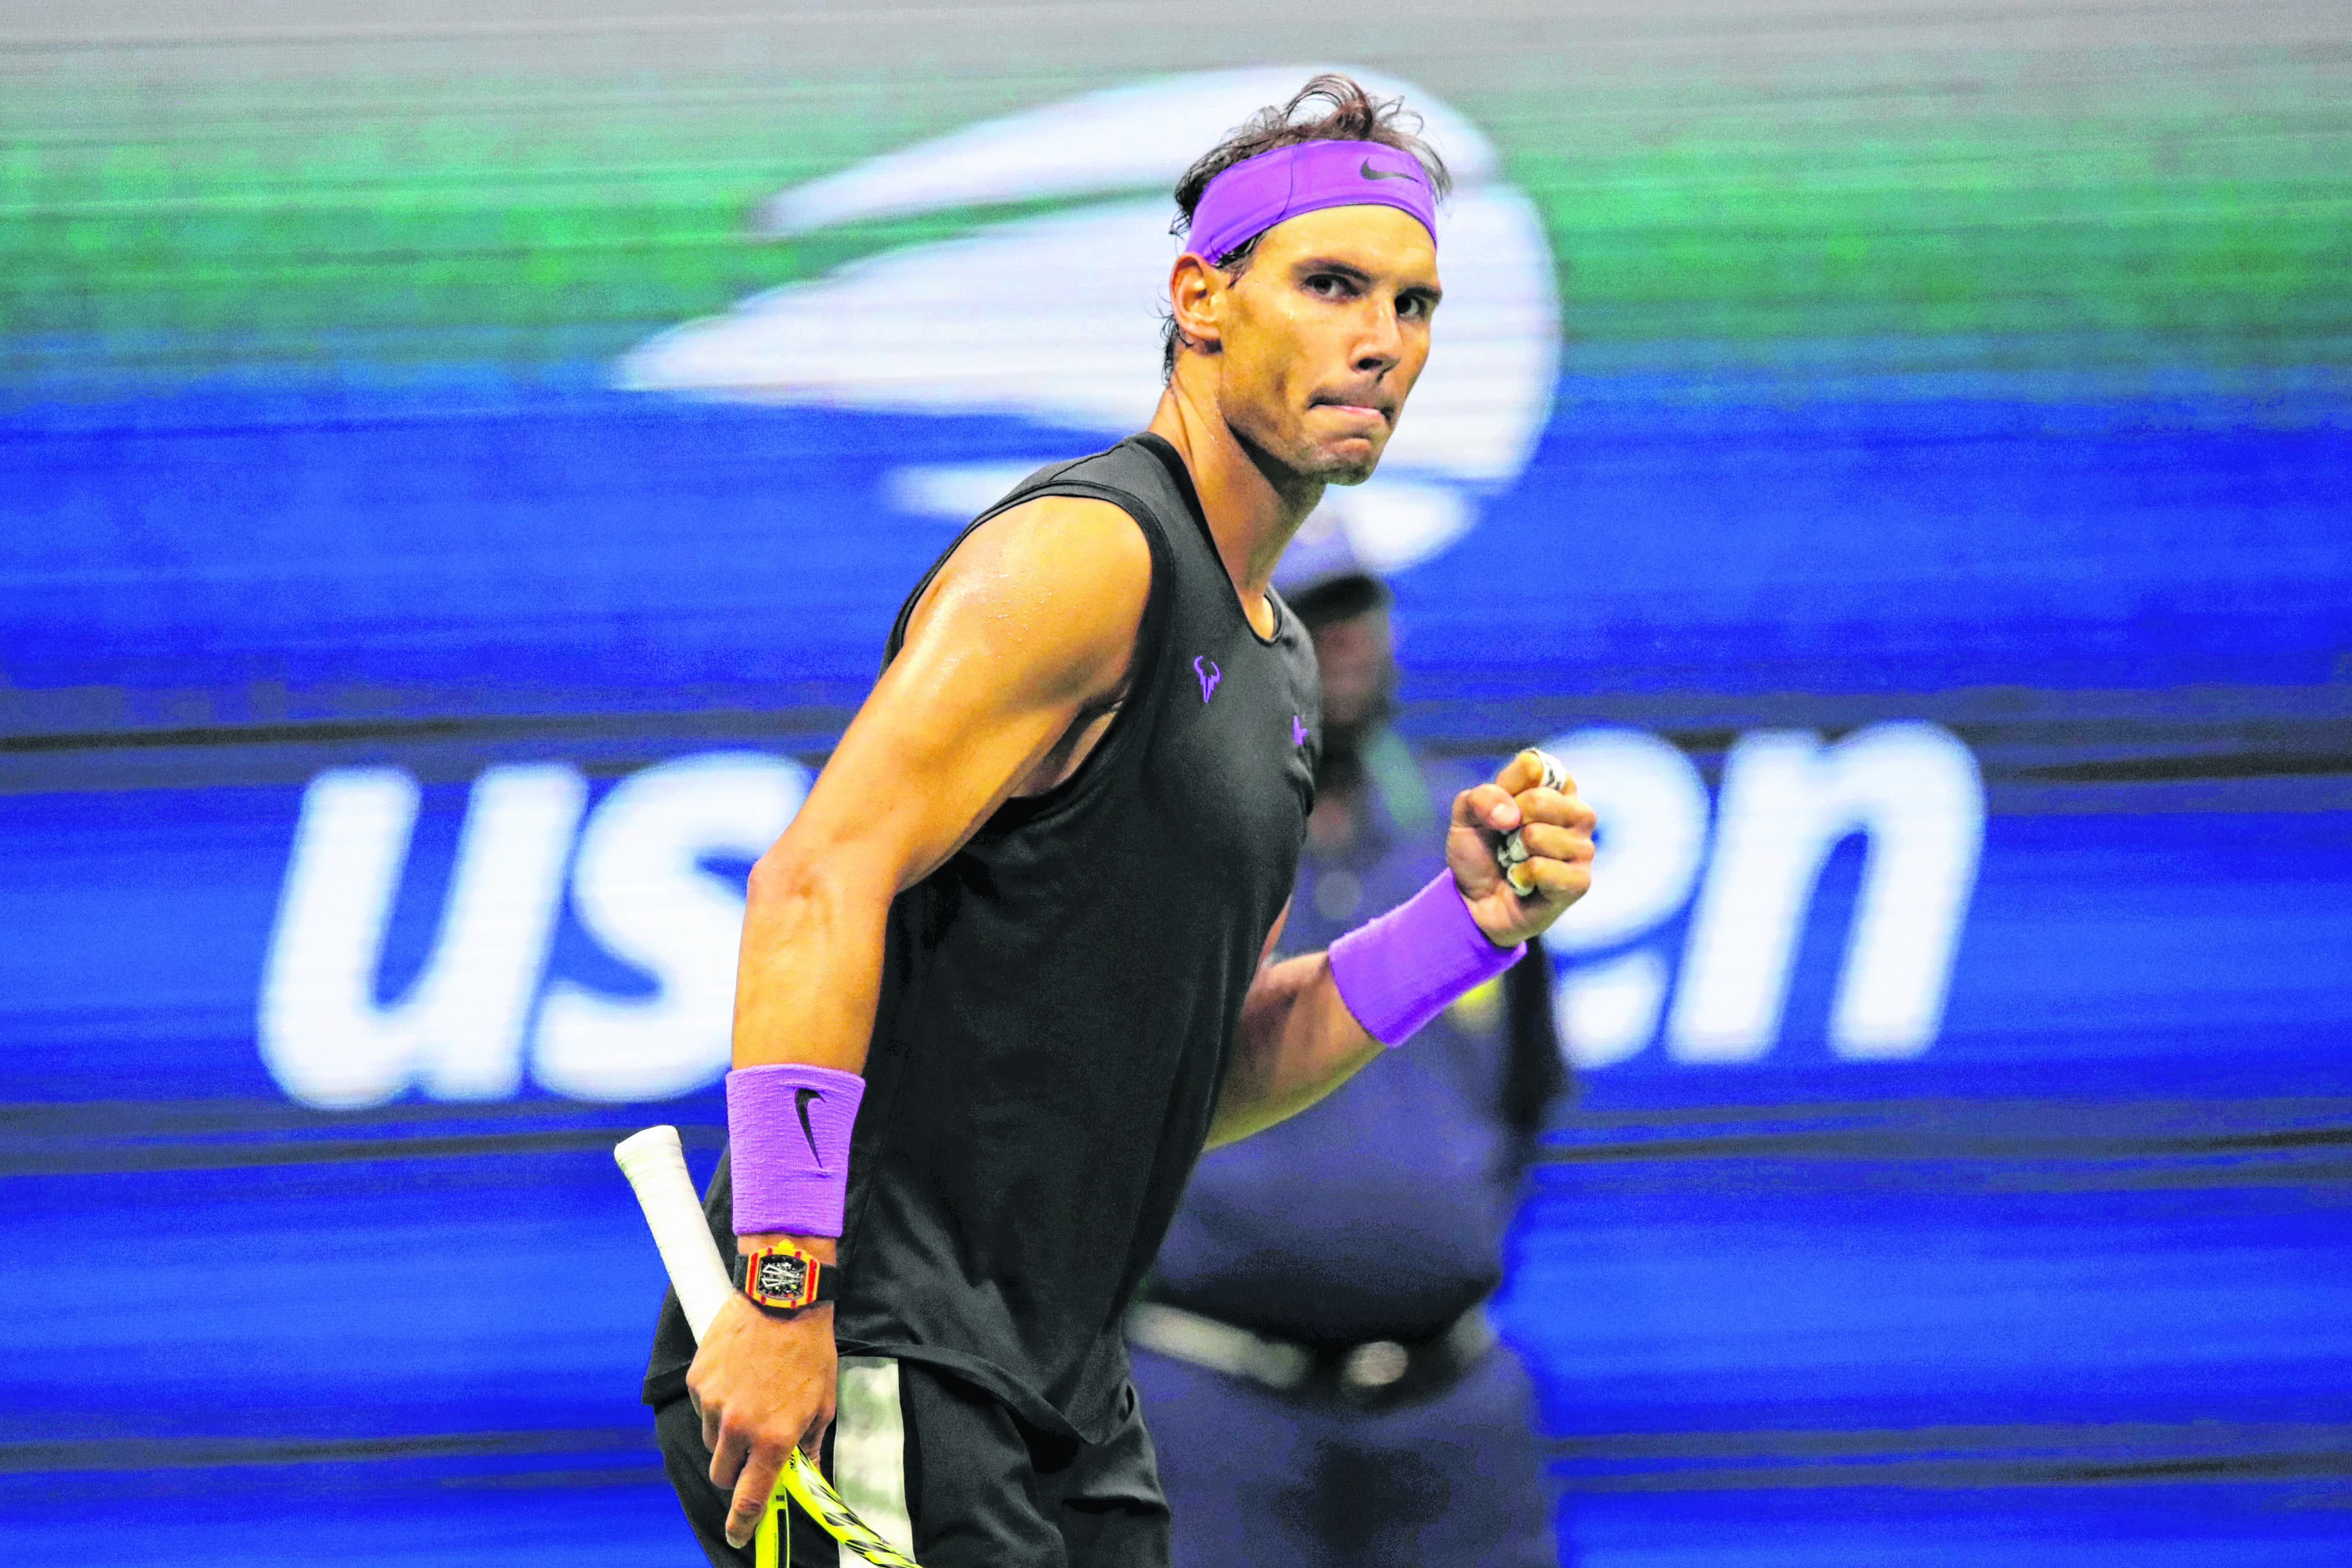 Rafa podrá quedar a un Grand Slam del récord de Federer. (Foto: AP)